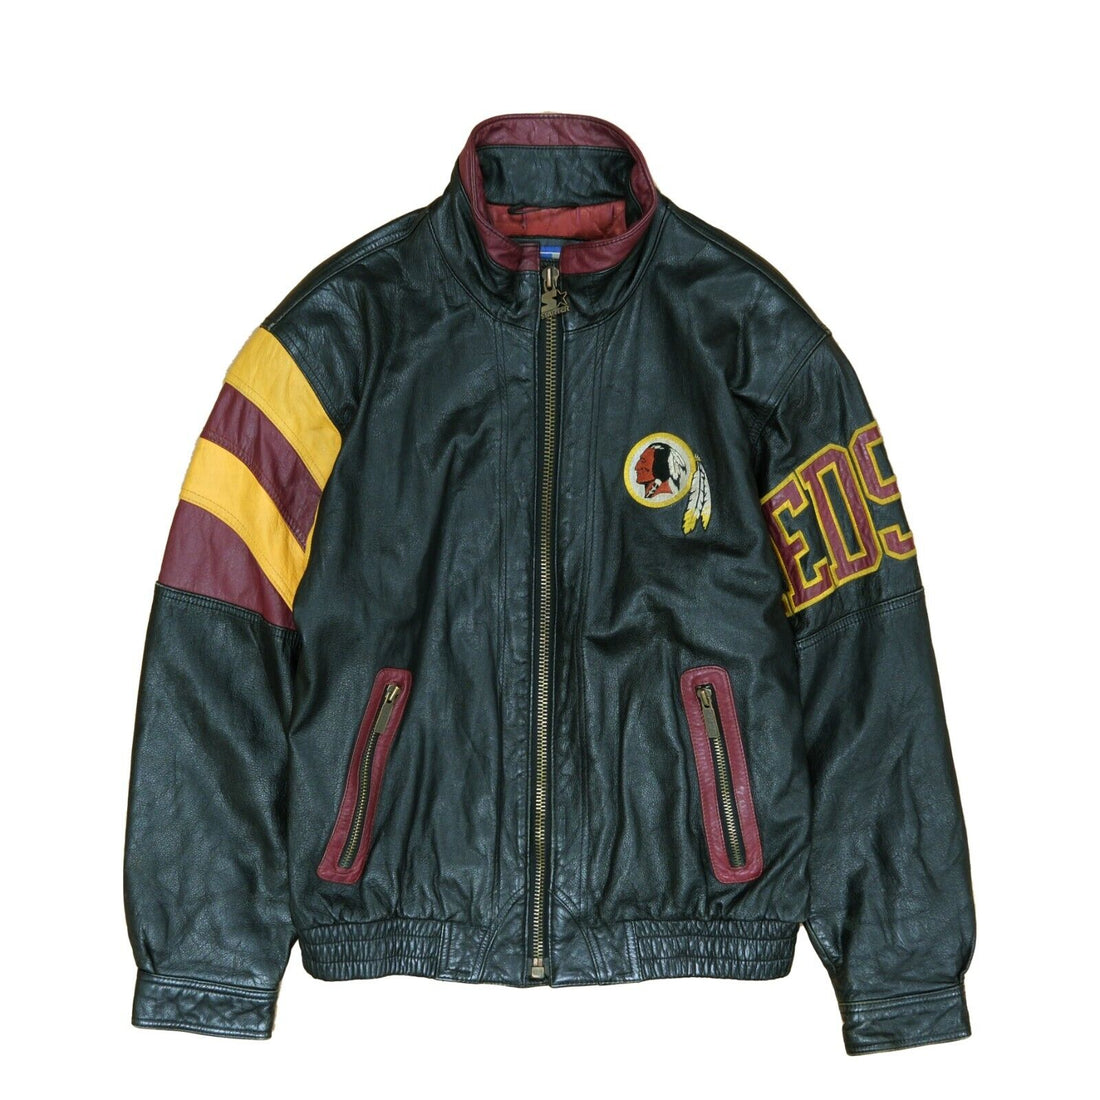 Vintage Washington Redskins Starter Leather Varsity Jacket Size Medium 90s NFL